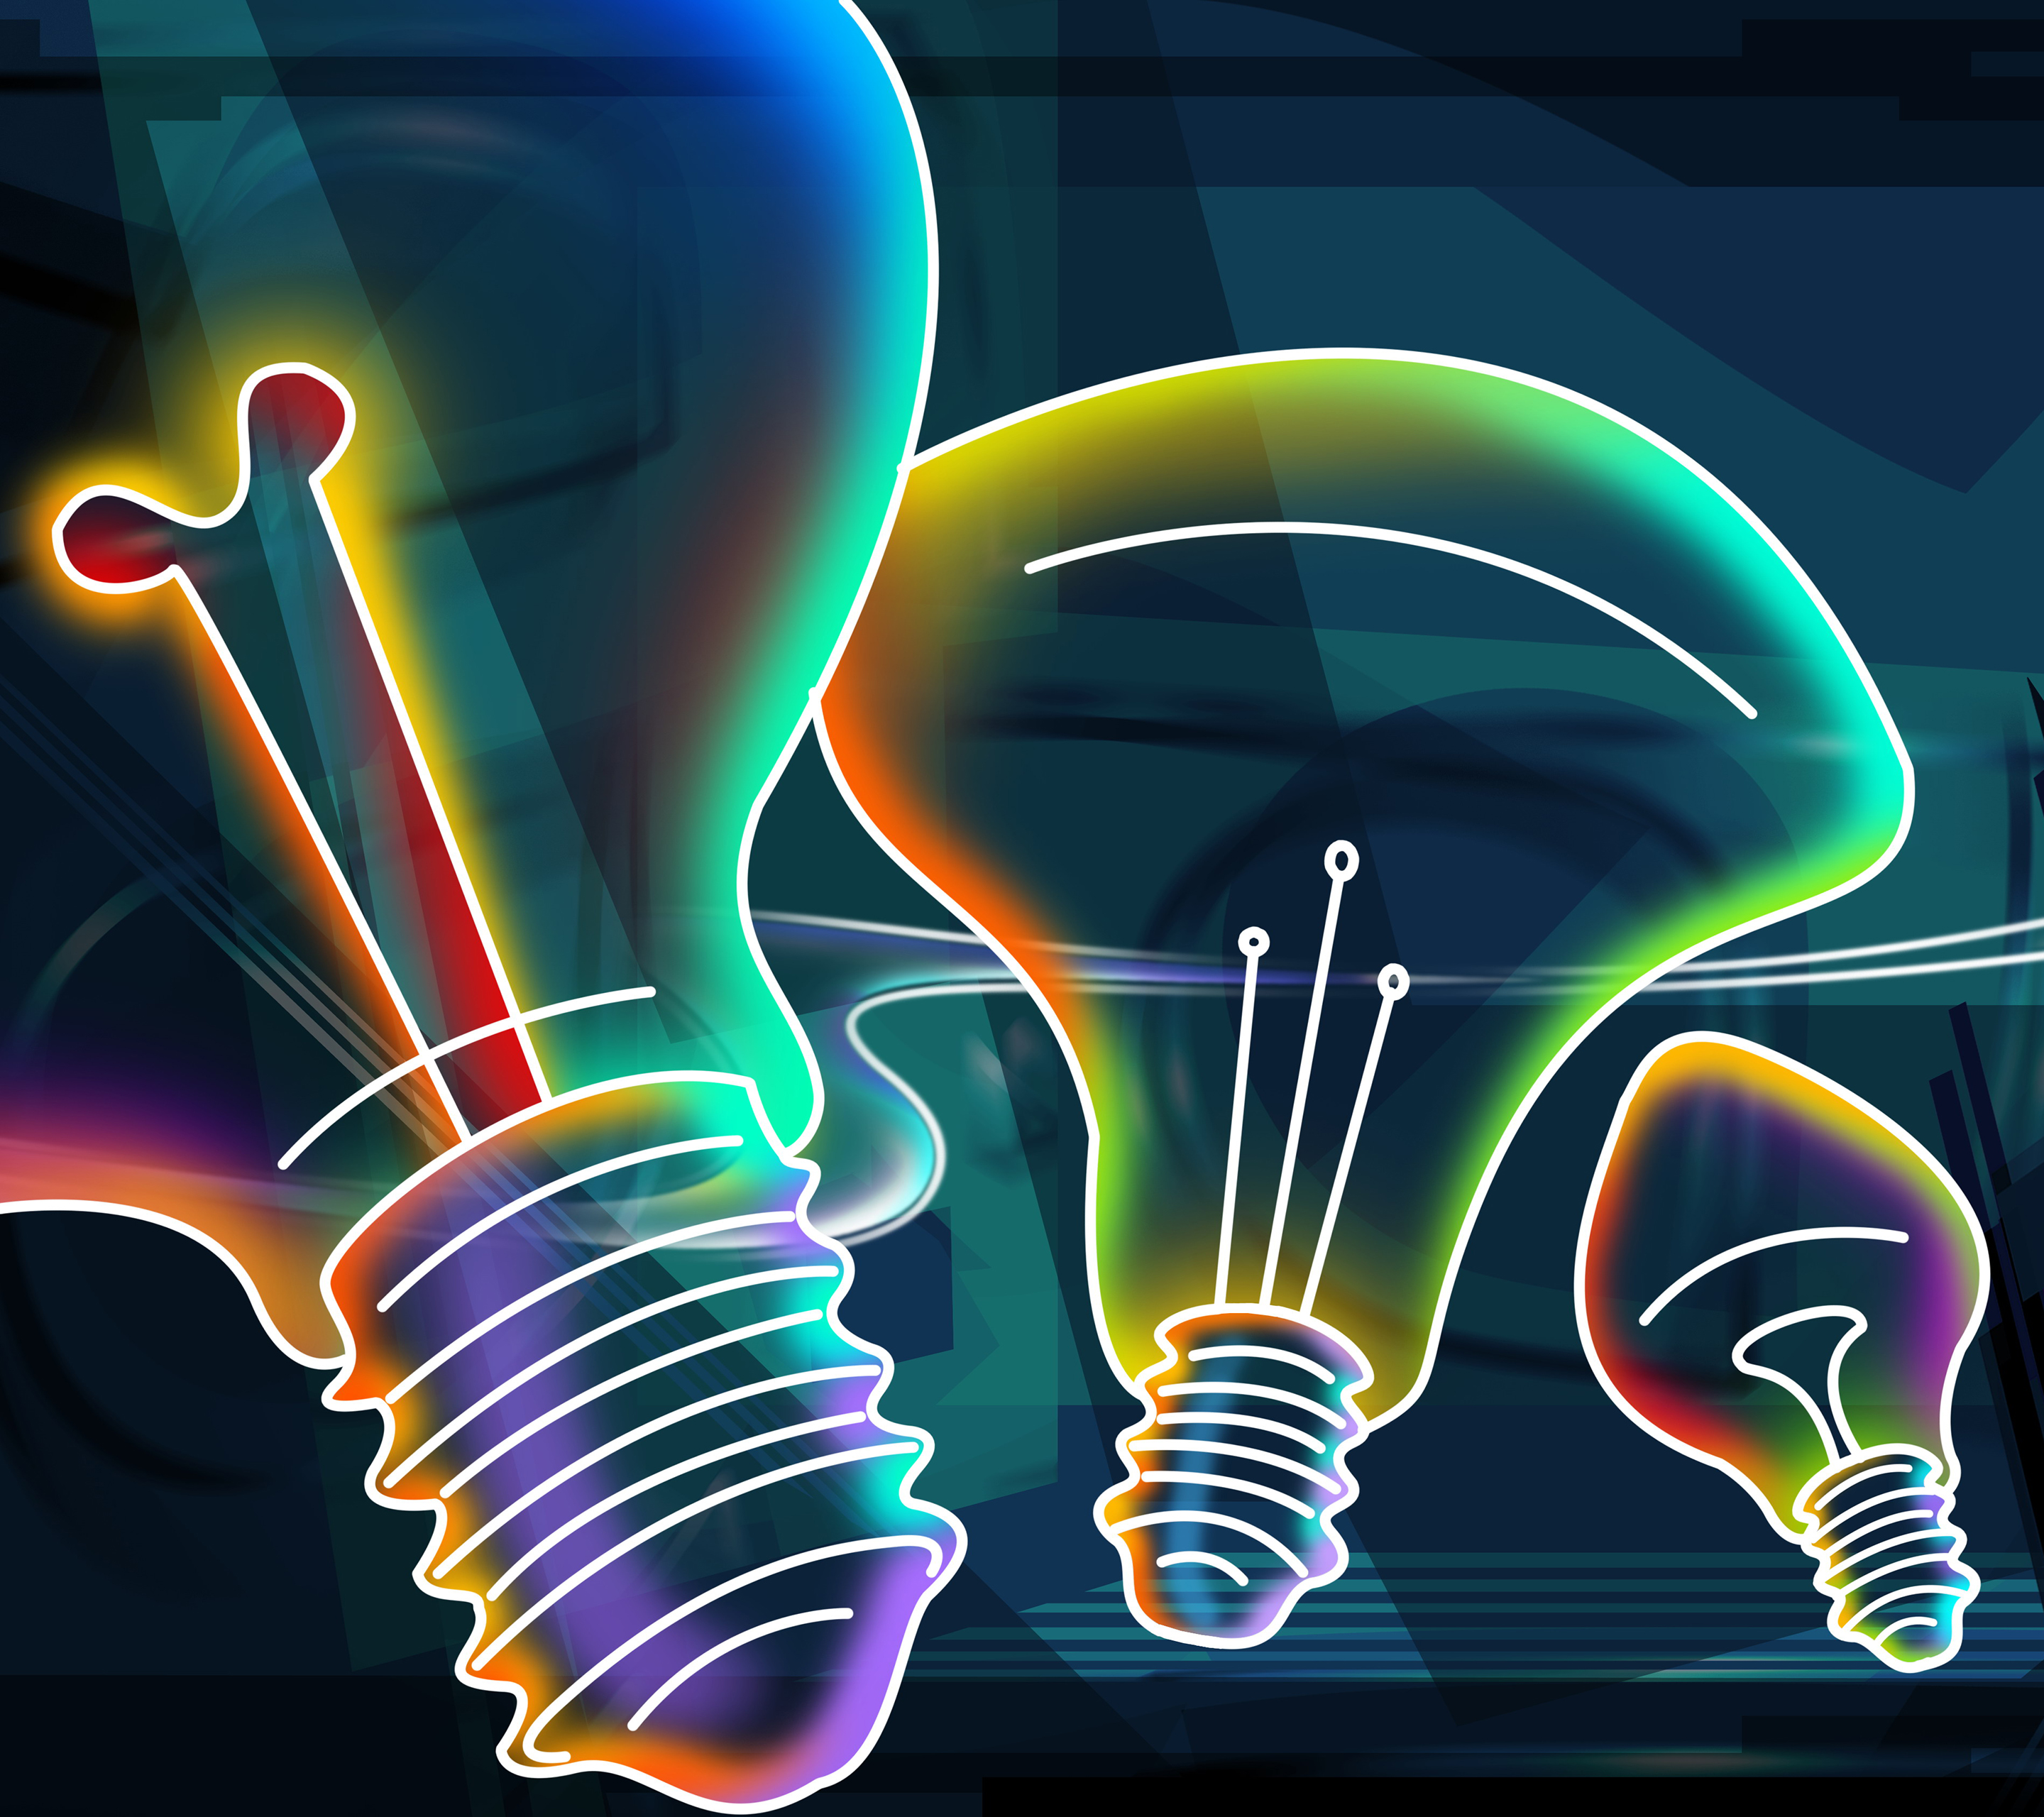 qhd wallpaper,light,lighting,graphic design,neon,light bulb